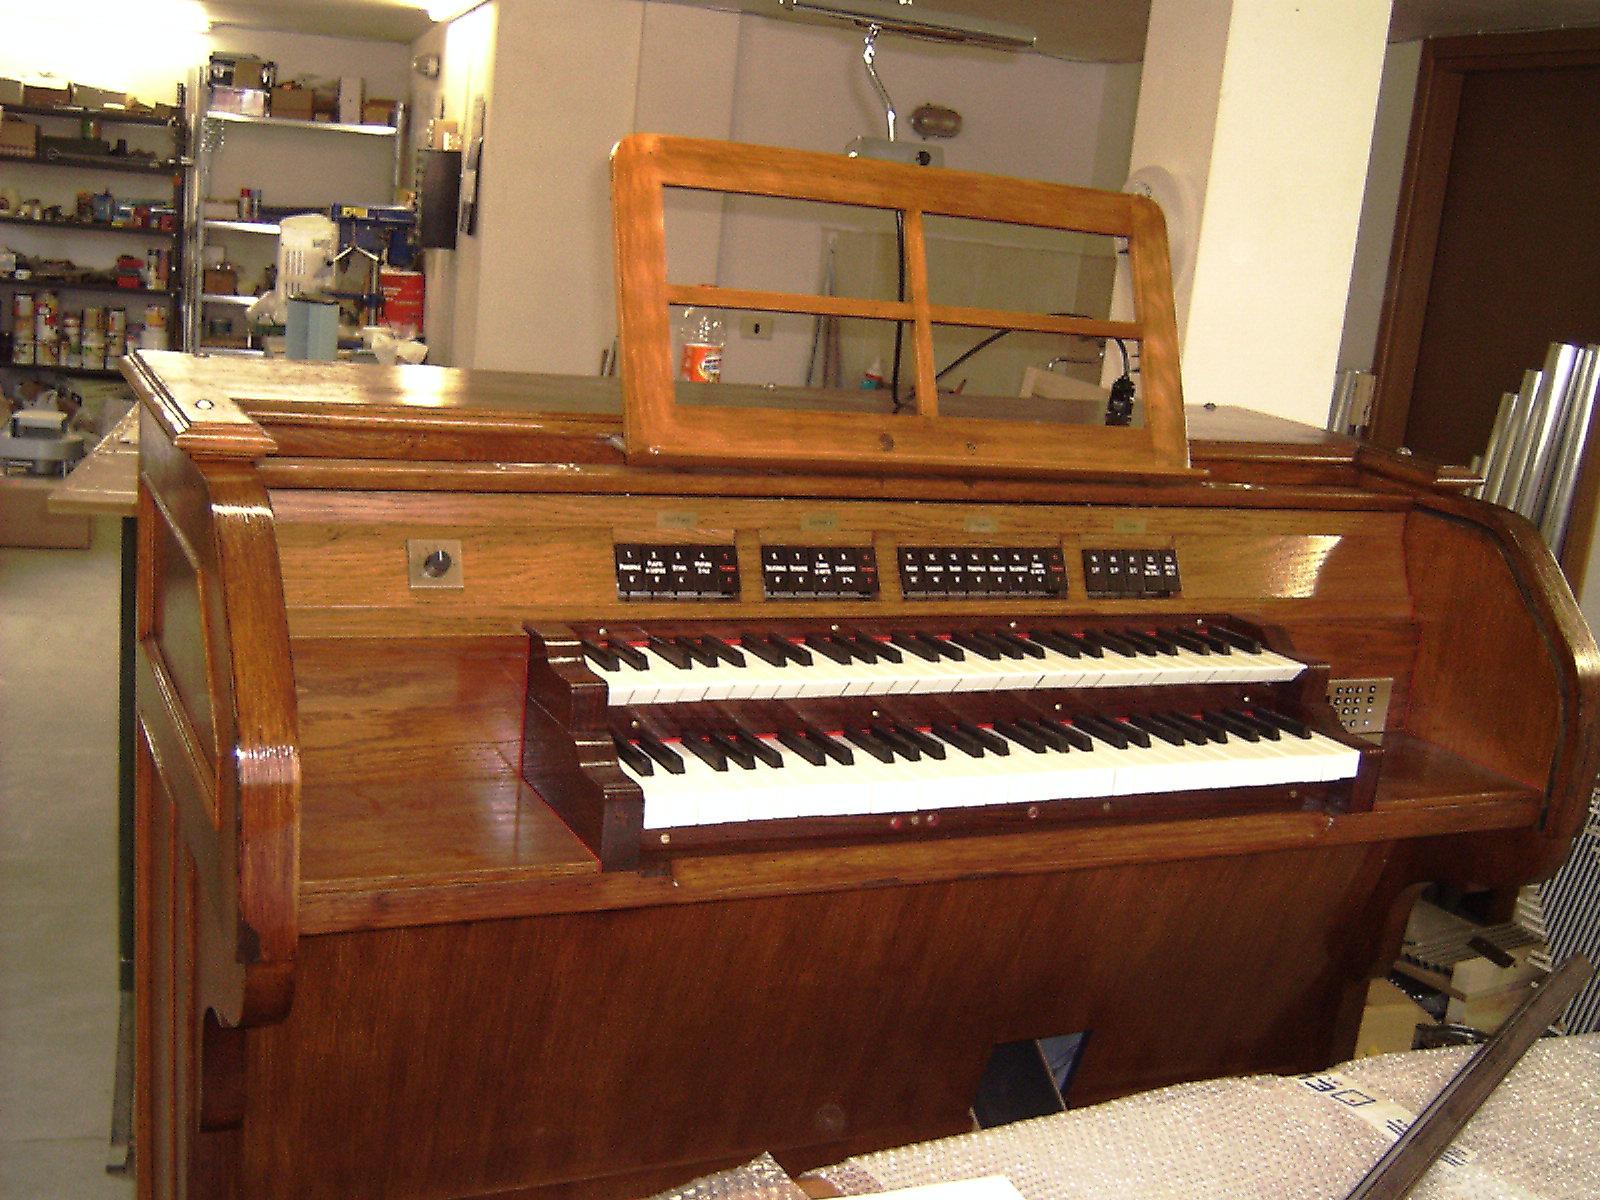 Electric pipe organ